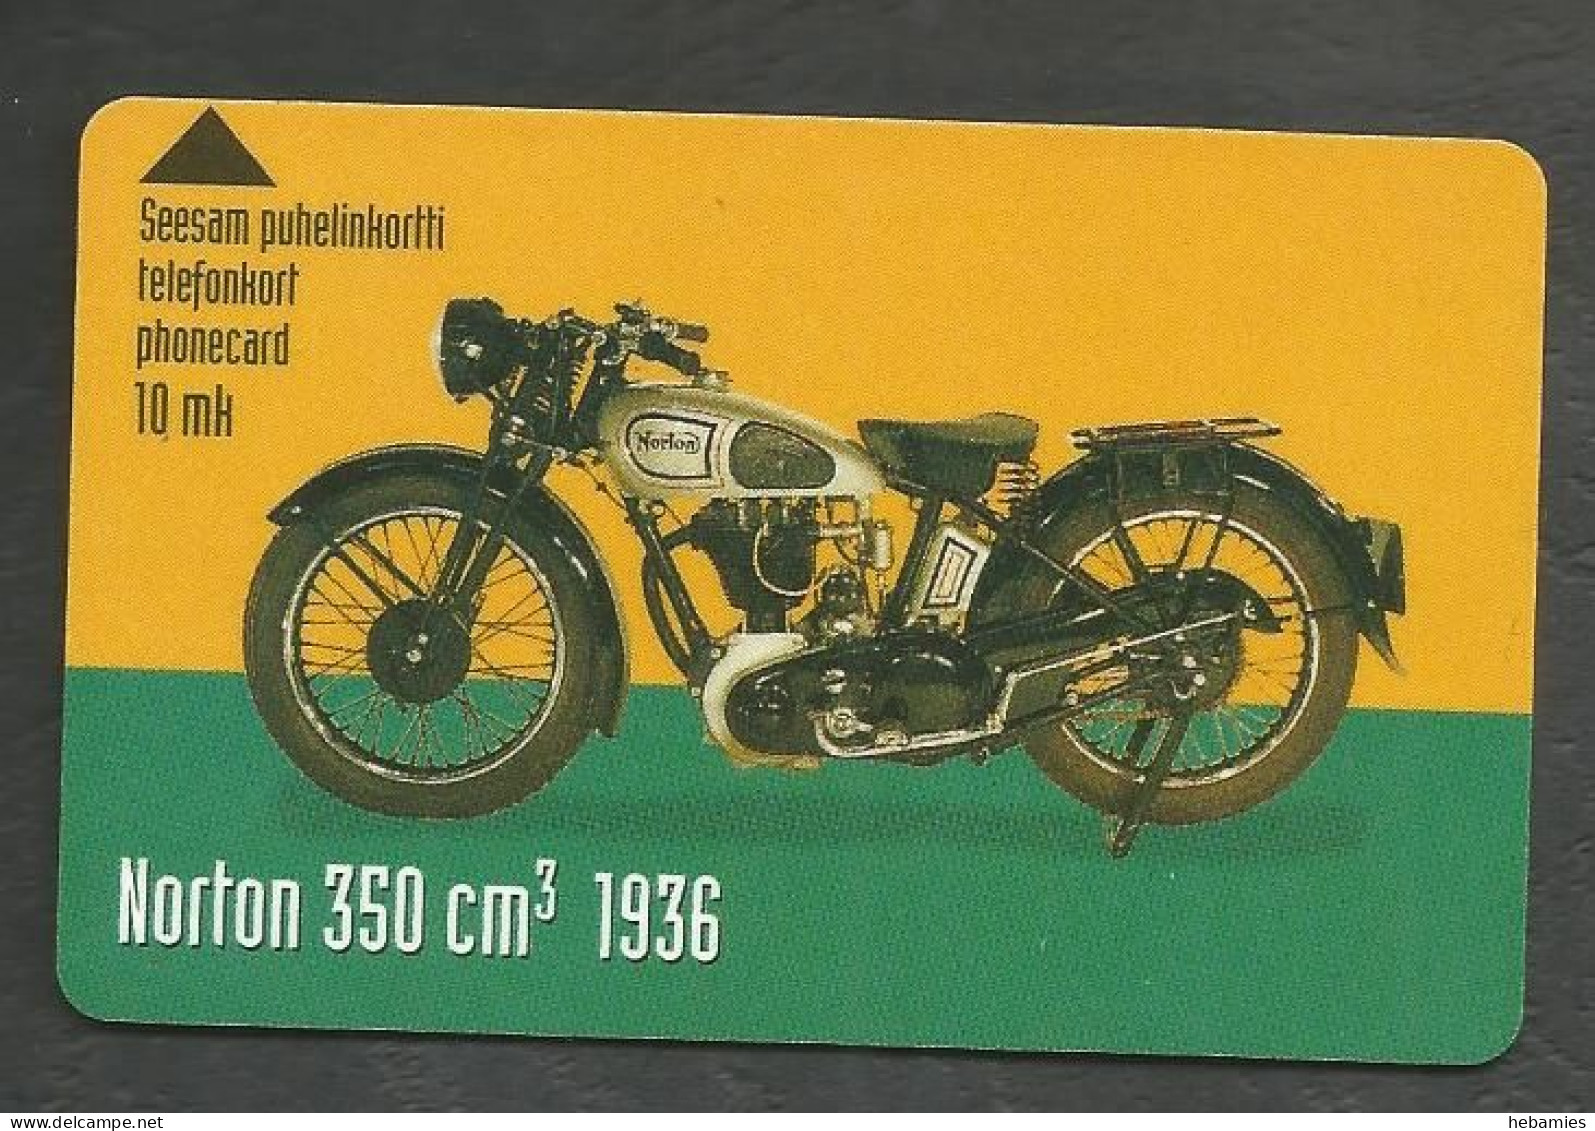 NORTON 350 Cm3 1936 - Magnetic Card -  10 FIM  FINNET - FINLAND - - Moto